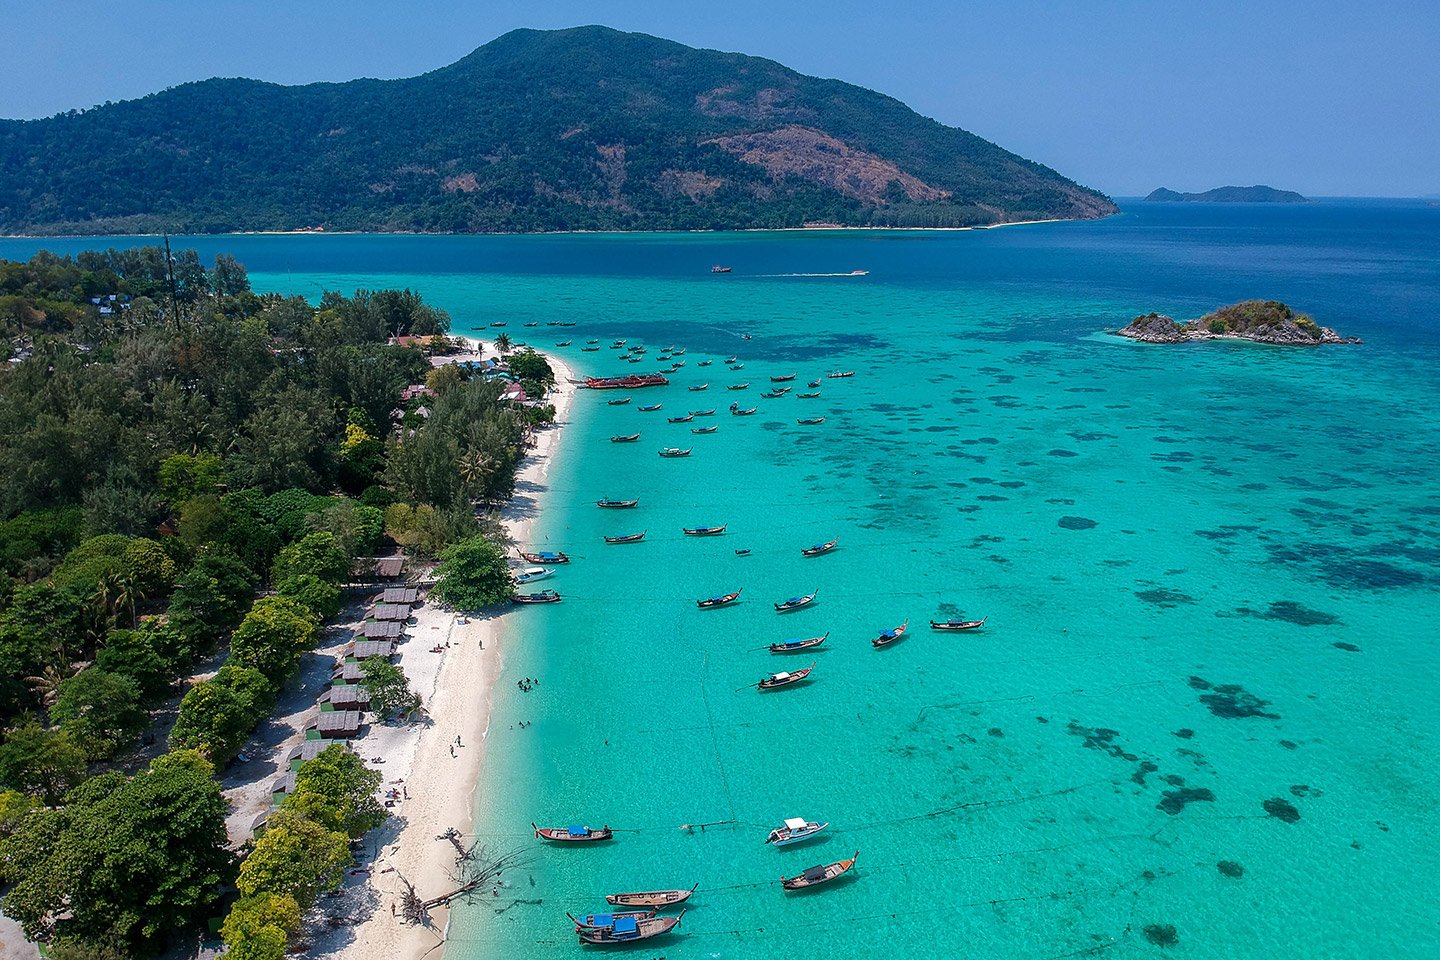 Vista de la isla de Ko Lipe desde el dron